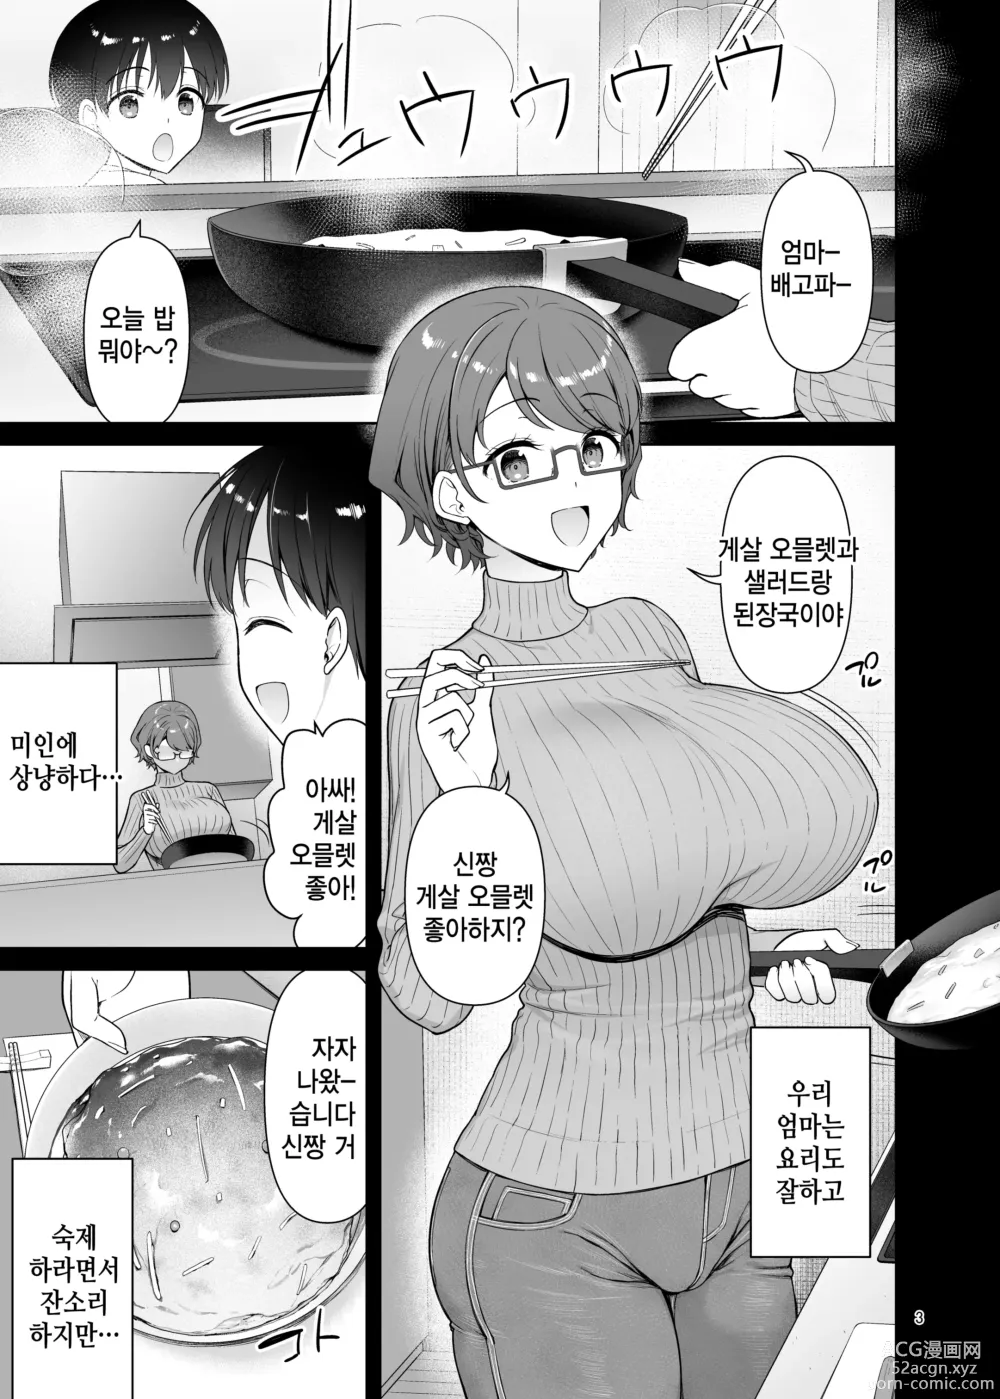 Page 3 of doujinshi 우리 엄마는 동생 앞에서만 초변태가 된다